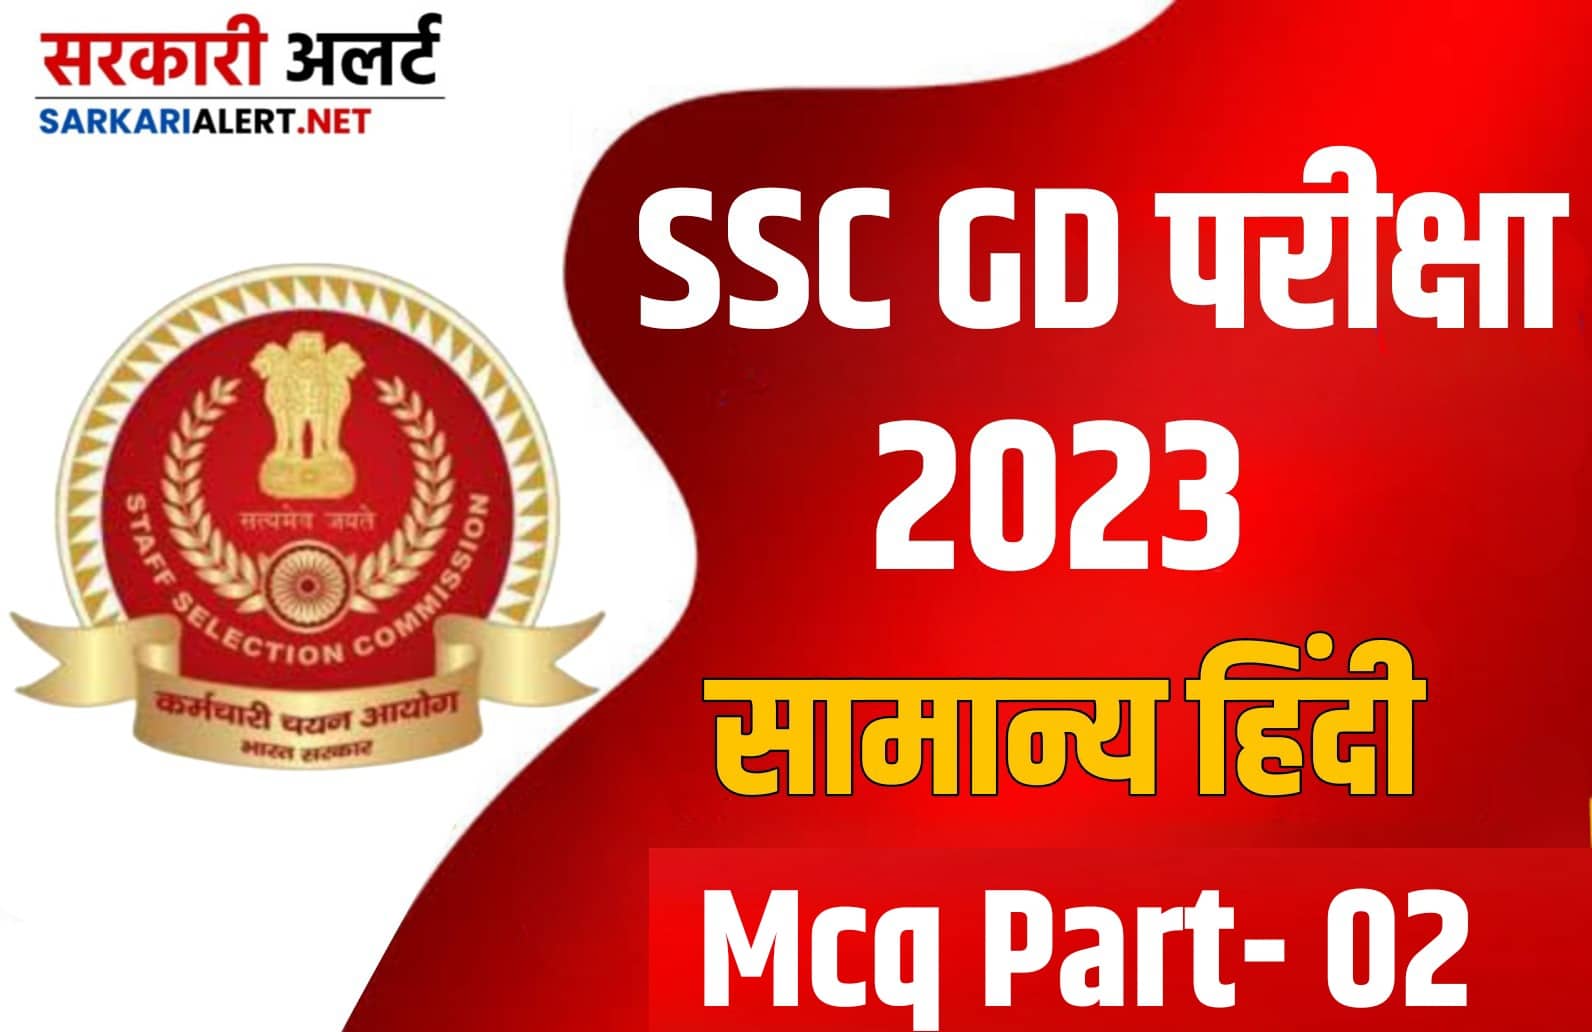 SSC GD Exam 2023 Hindi MCQ - 02 : एसएससी जीडी की परीक्षा हेतु सामान्य हिंदी के महत्वपूर्ण वस्तुनिष्ठ प्रश्न